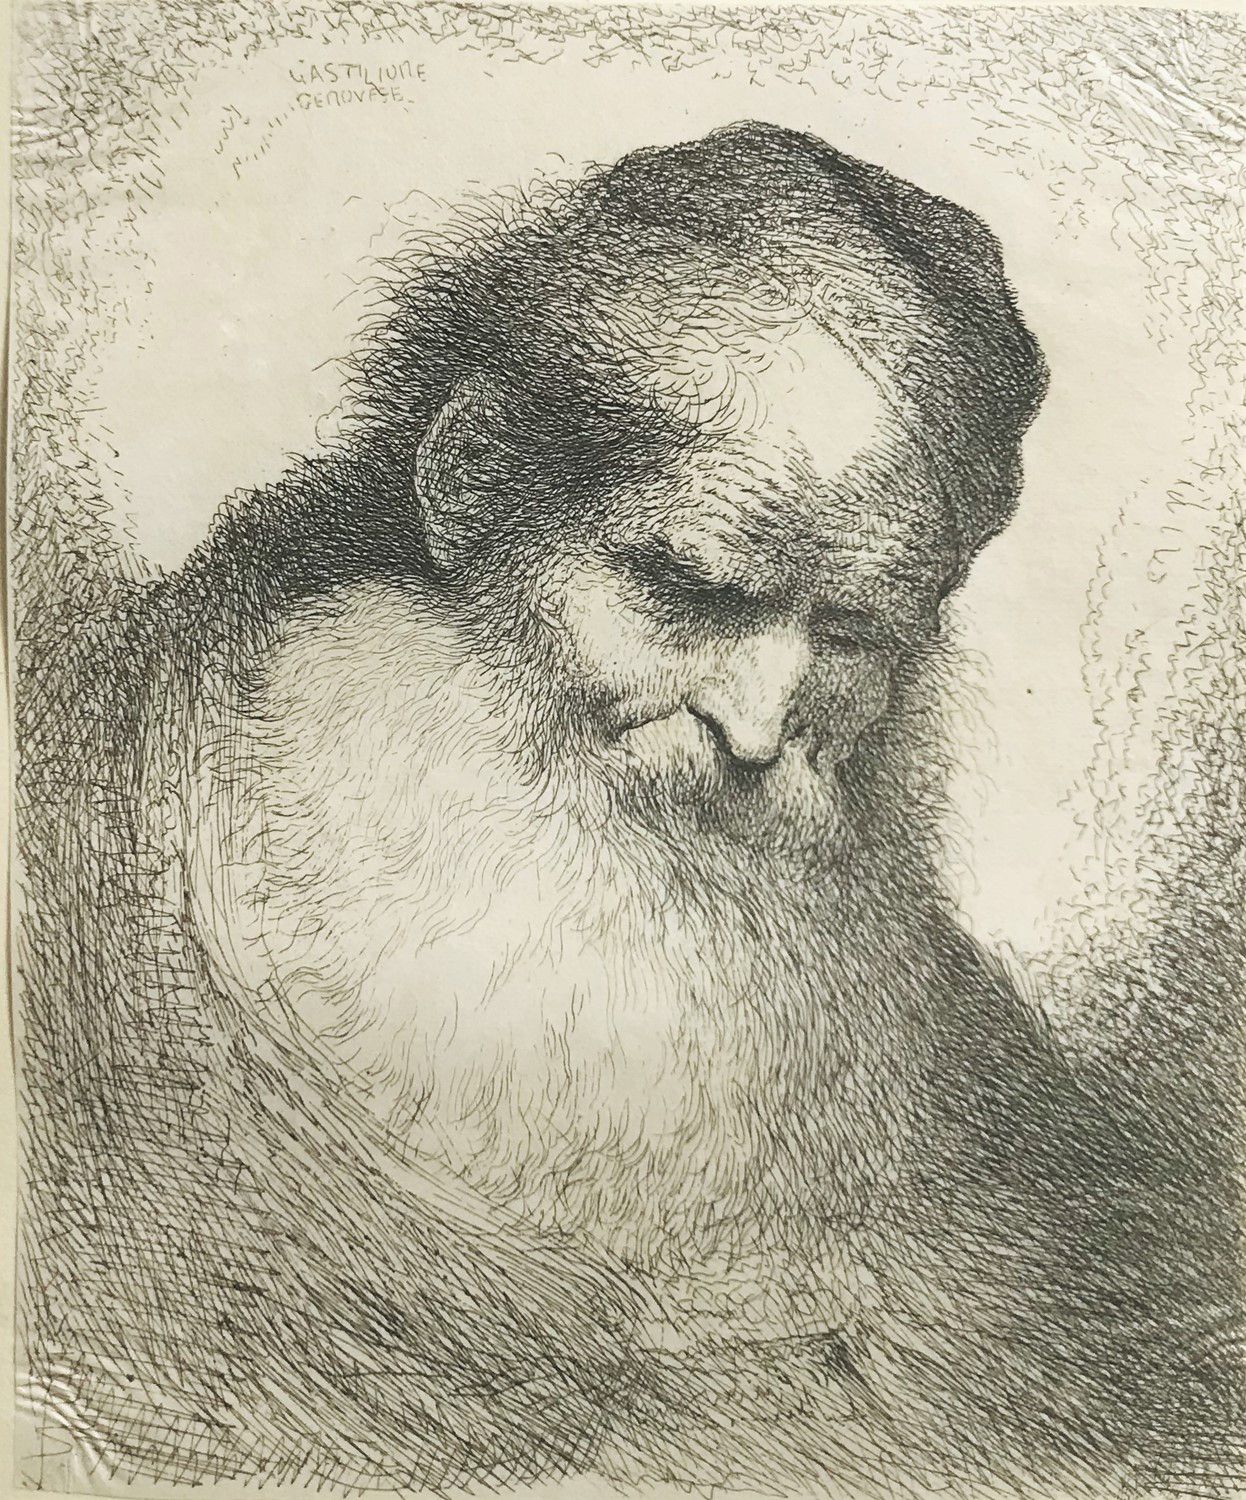 CASTIGLIONE. Old man with big beard. Giovanni Benedetto CASTIGLIONE1609-1664

Ol&hellip;